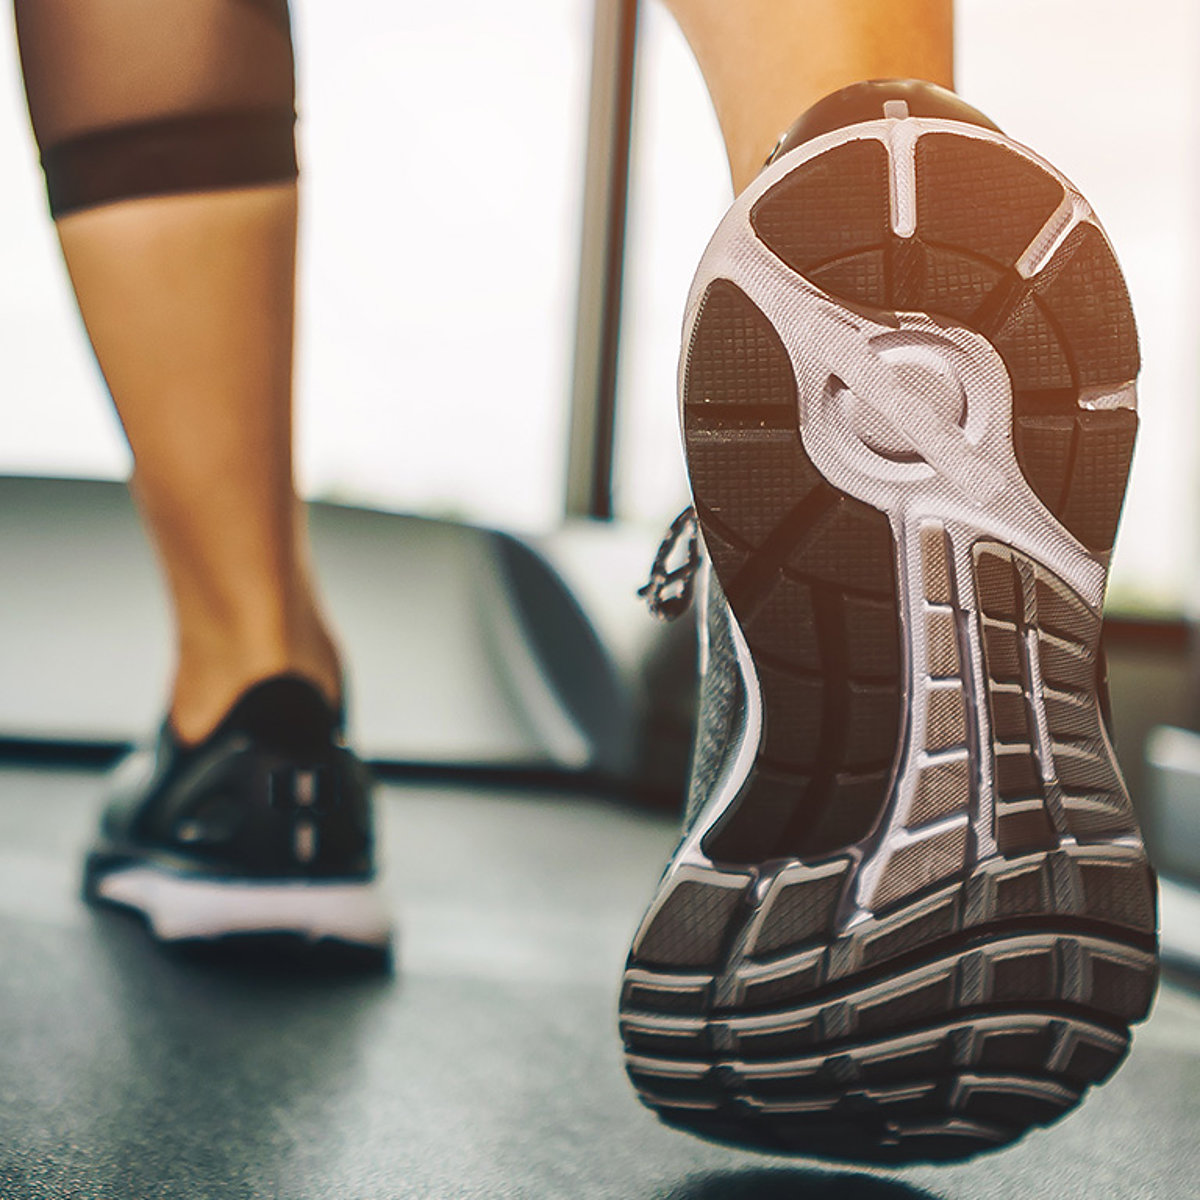 Eine Frau läuft mit maßangefertigten orthopädischen Schuhen auf einem Laufband. 